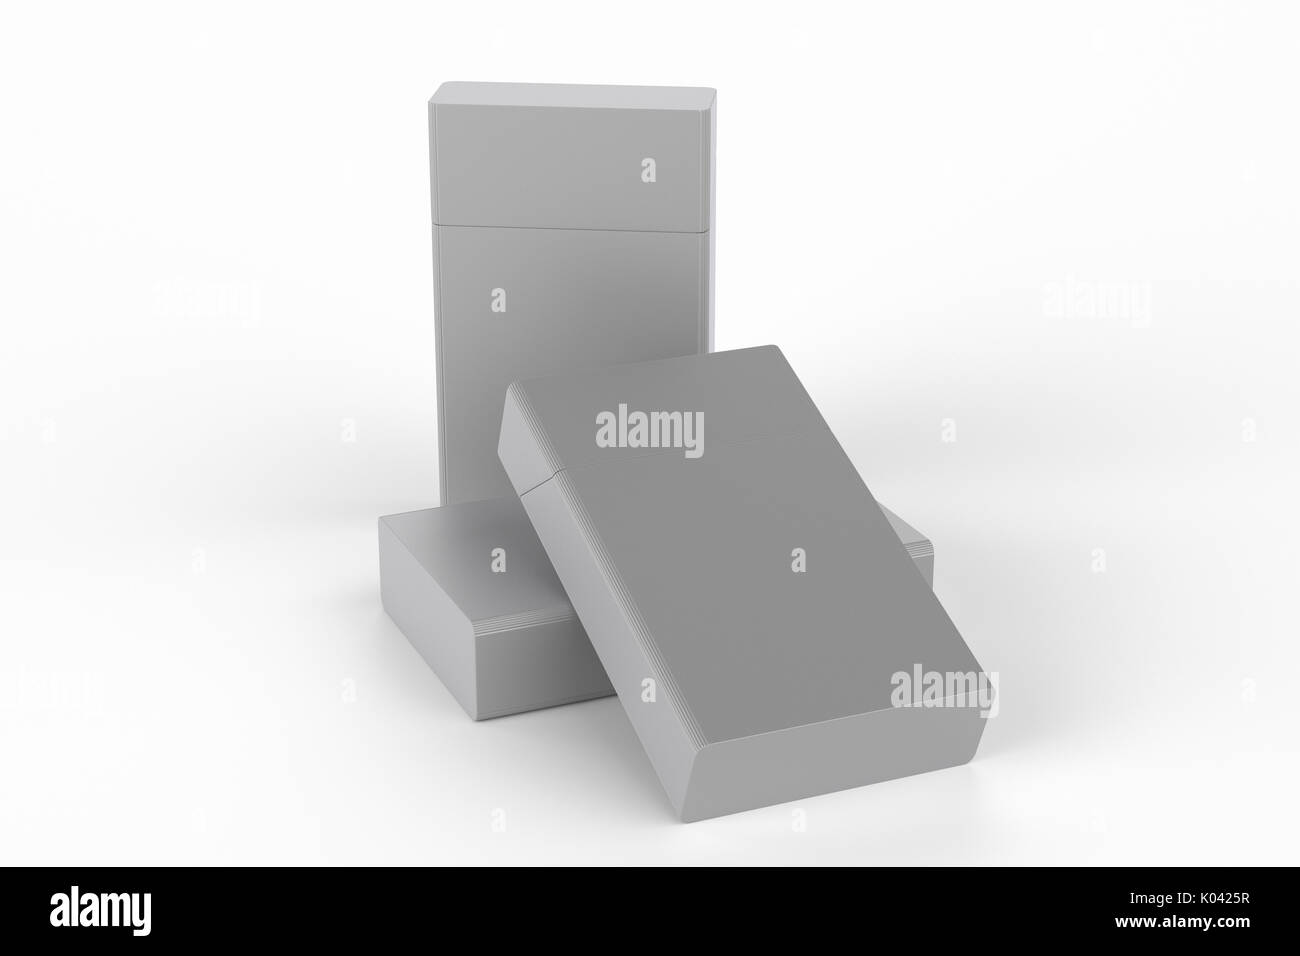 3D Render composición de tres cajas de cigarrillos redondeado de tamaño king size o paquetes sobre un fondo blanco con sombra. Trazado de recorte. Plantilla para su diseño. Foto de stock